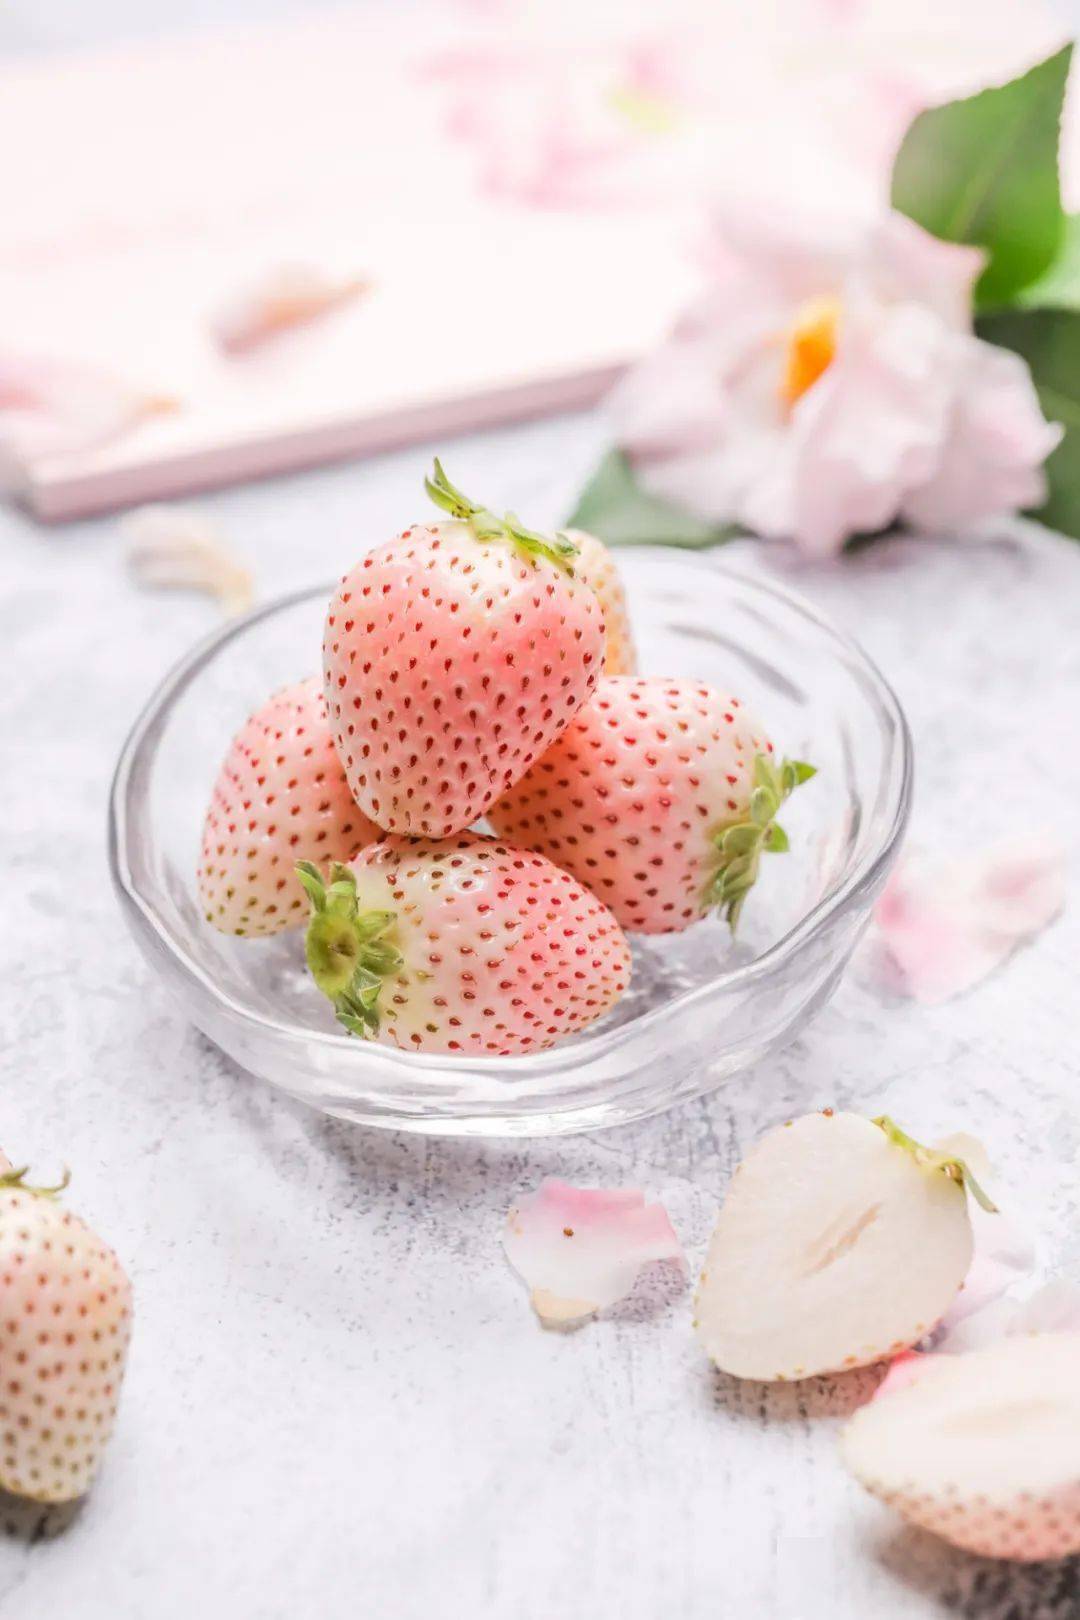 超市初春应该是什么滋味是粉粉嫩嫩的淡雪草莓呀